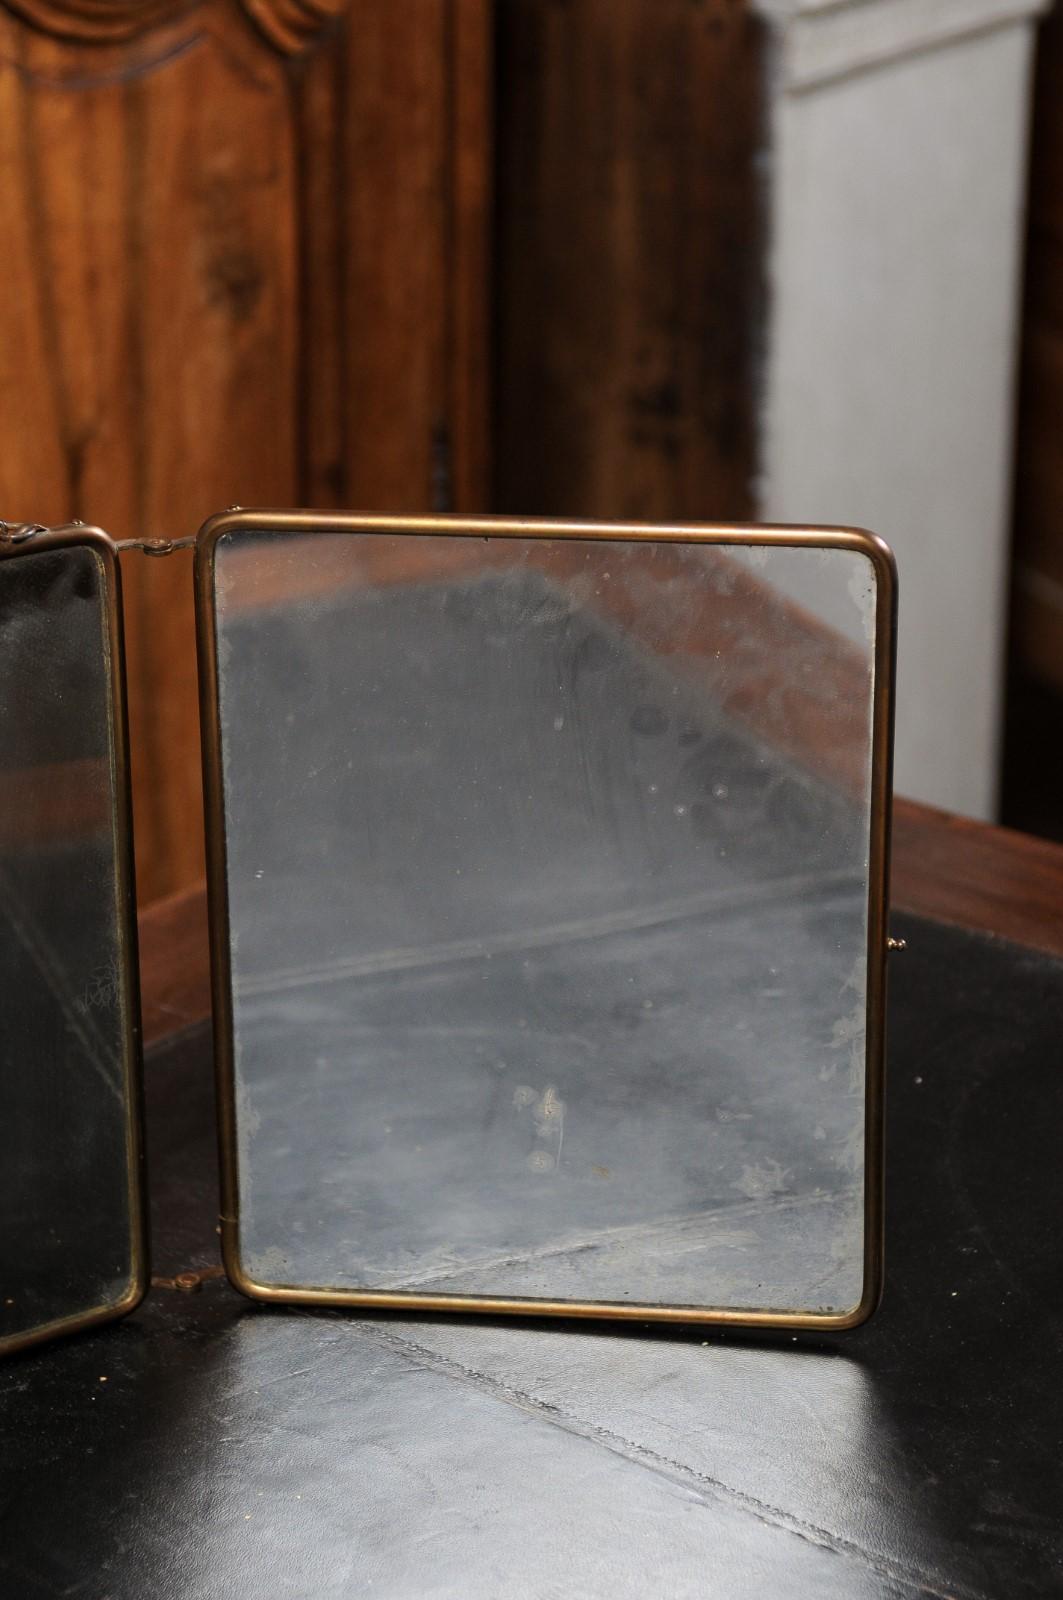 Dreiteiliger französischer Spiegel aus dem 19. Jahrhundert mit gemaltem Dekor im Rokokostil. Dieser aufklappbare Spiegelschirm wurde im 19. Jahrhundert in Frankreich hergestellt und besteht aus einer Metallstruktur, an der auf einer Seite drei